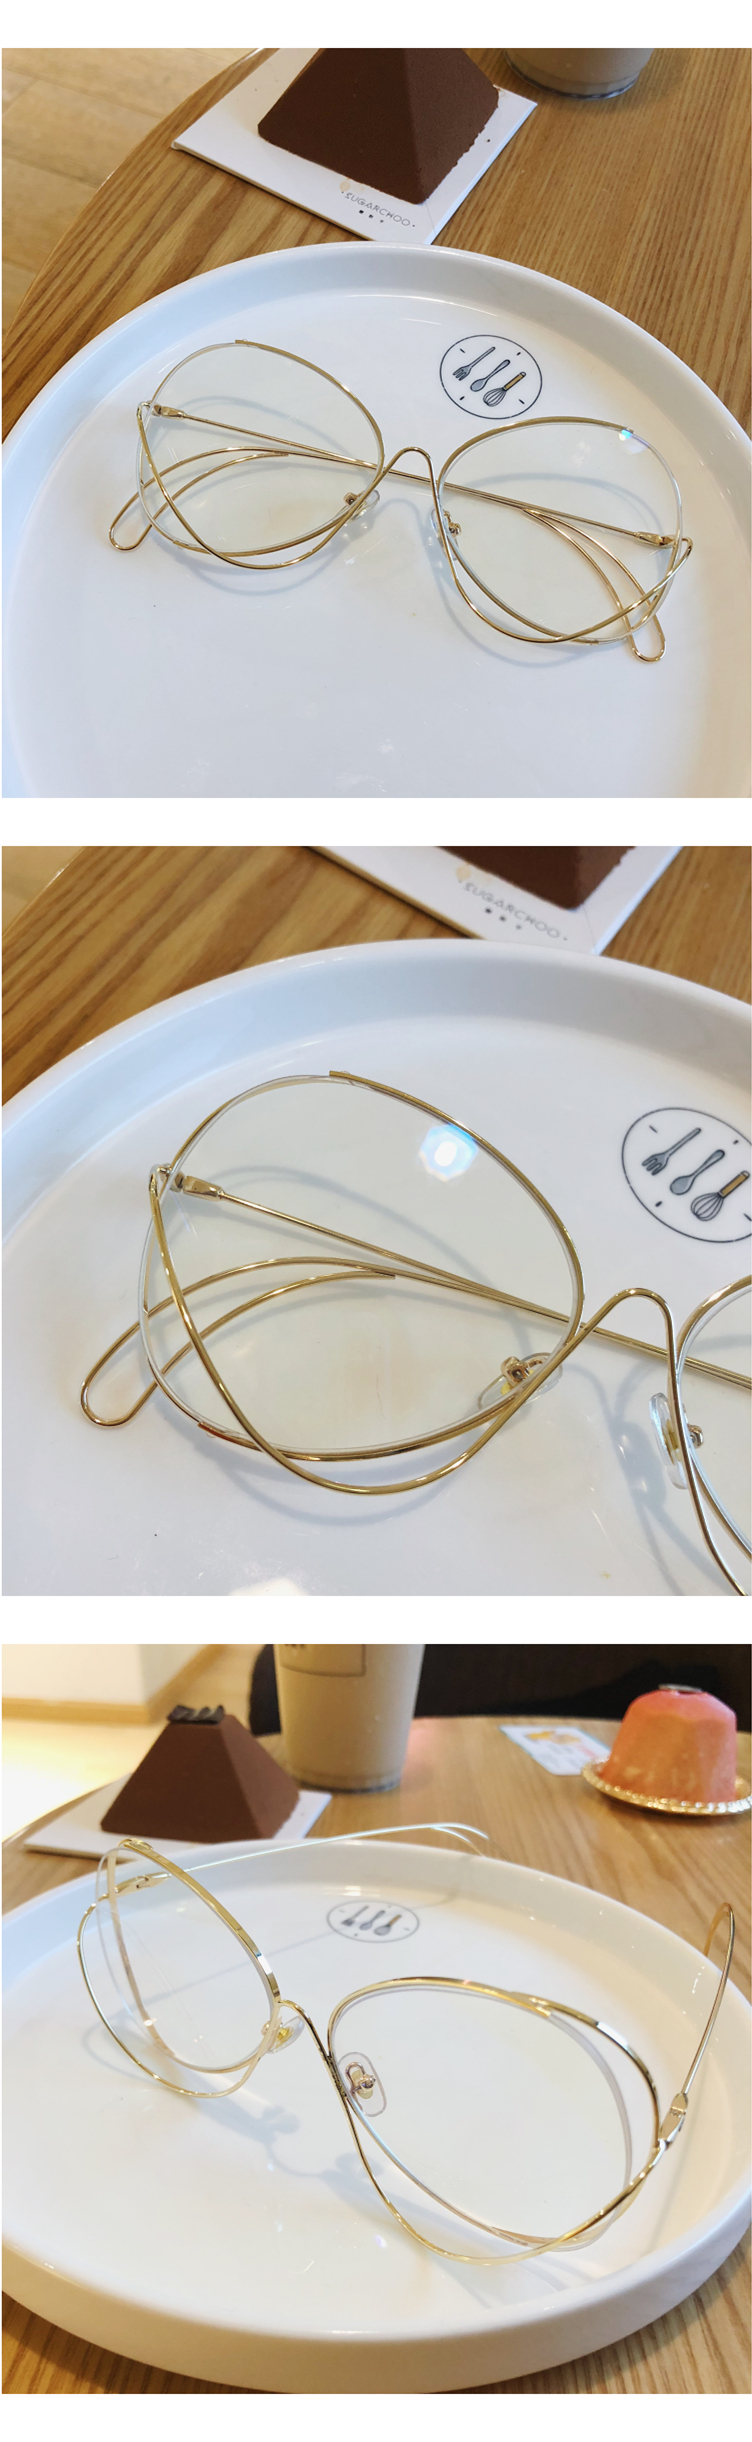 ビッグサイズ眼鏡カラーレンズめがねサングラス 店人気レトロ原宿サングラス